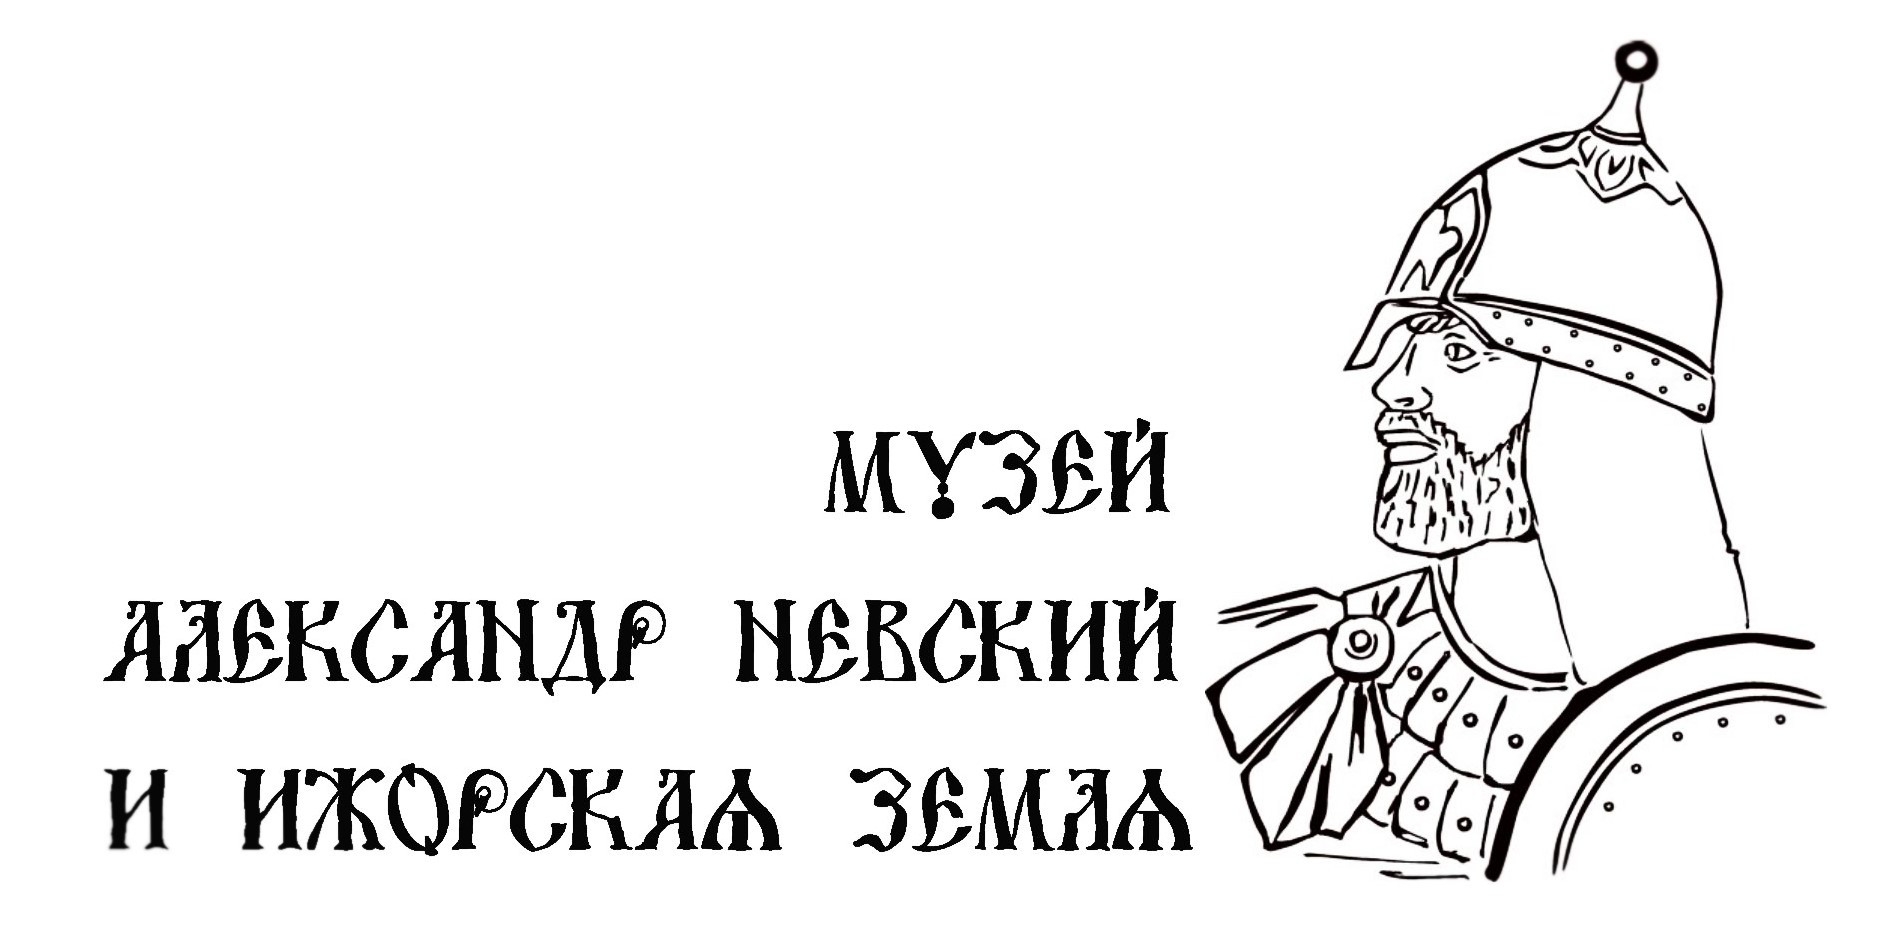 Александр Невский рисунок